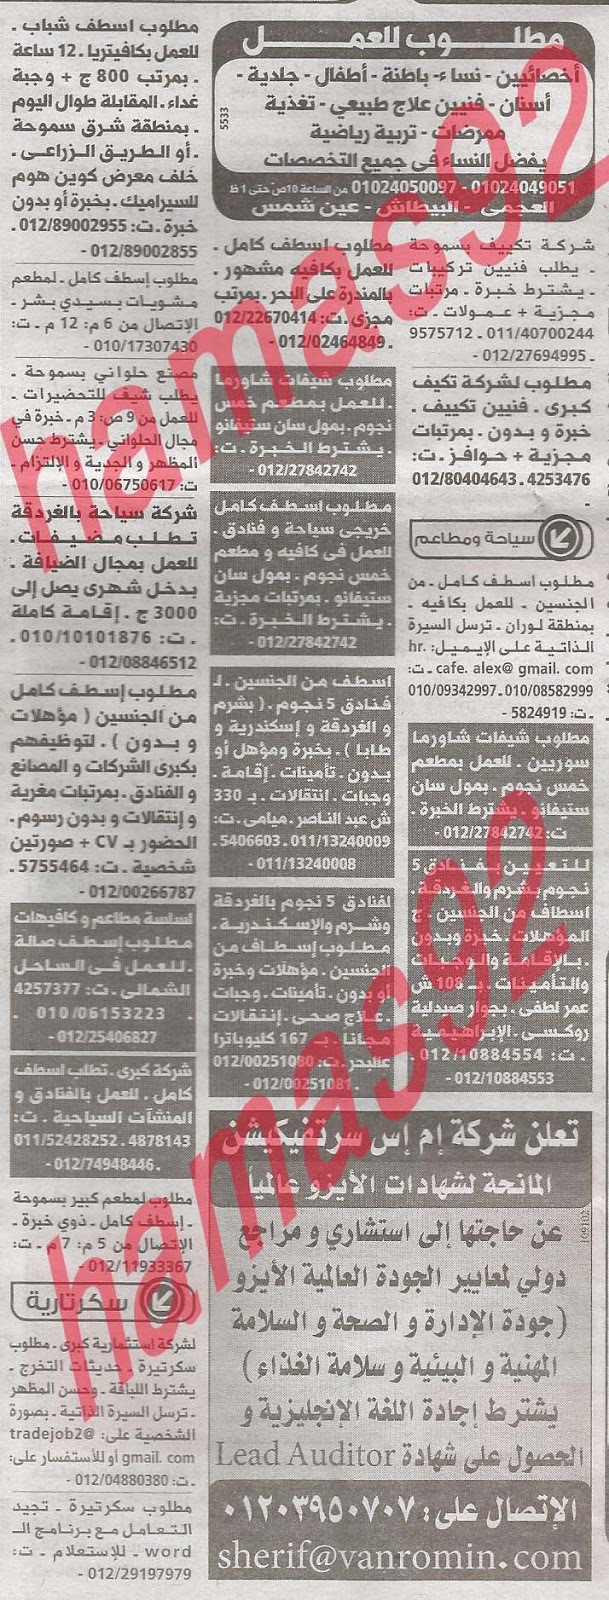 وظائف خالية فى جريدة الوسيط الاسكندرية الثلاثاء 23-04-2013 %D9%88+%D8%B3+%D8%B3+2